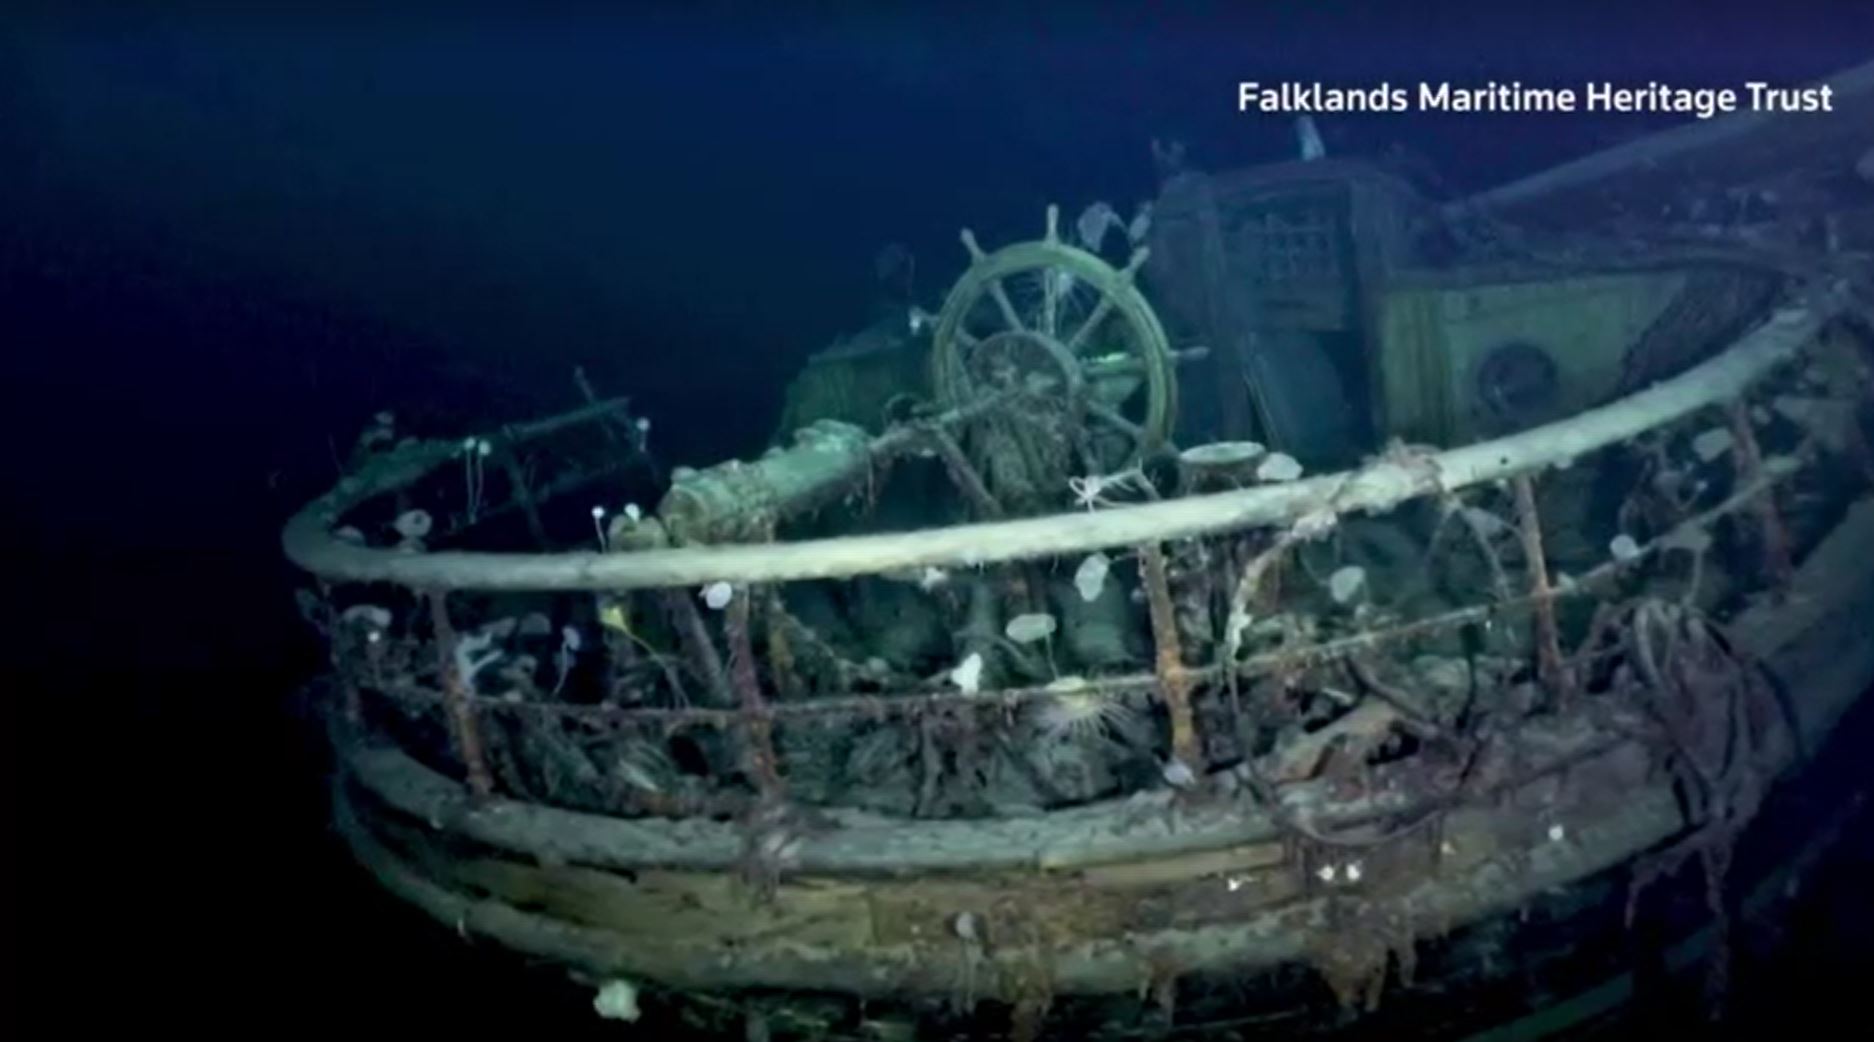 Shackleton's ship 